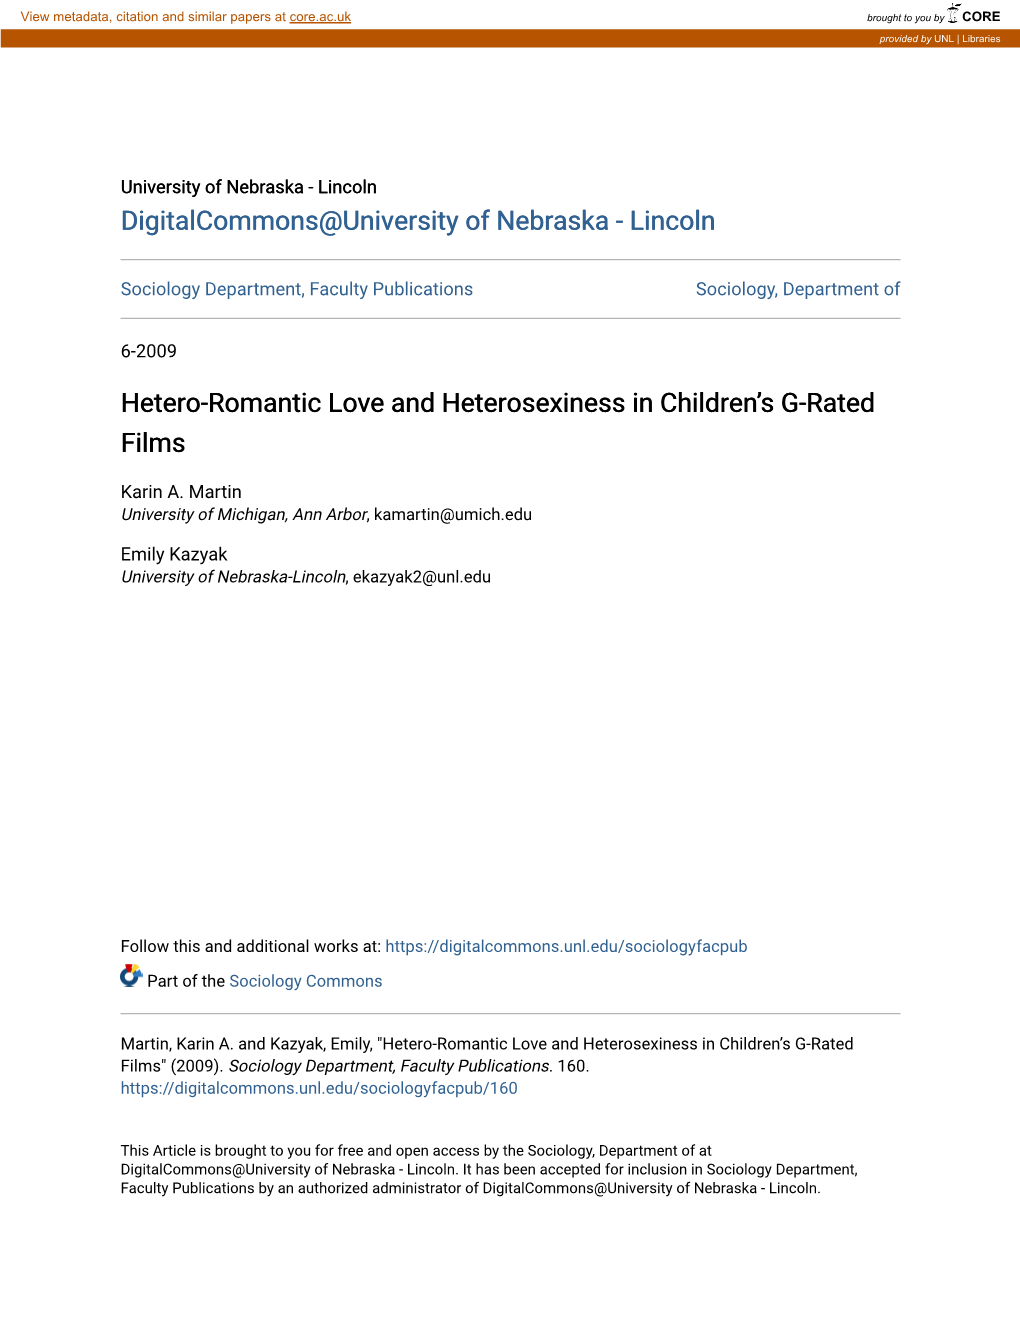 Hetero-Romantic Love and Heterosexiness in Children's G